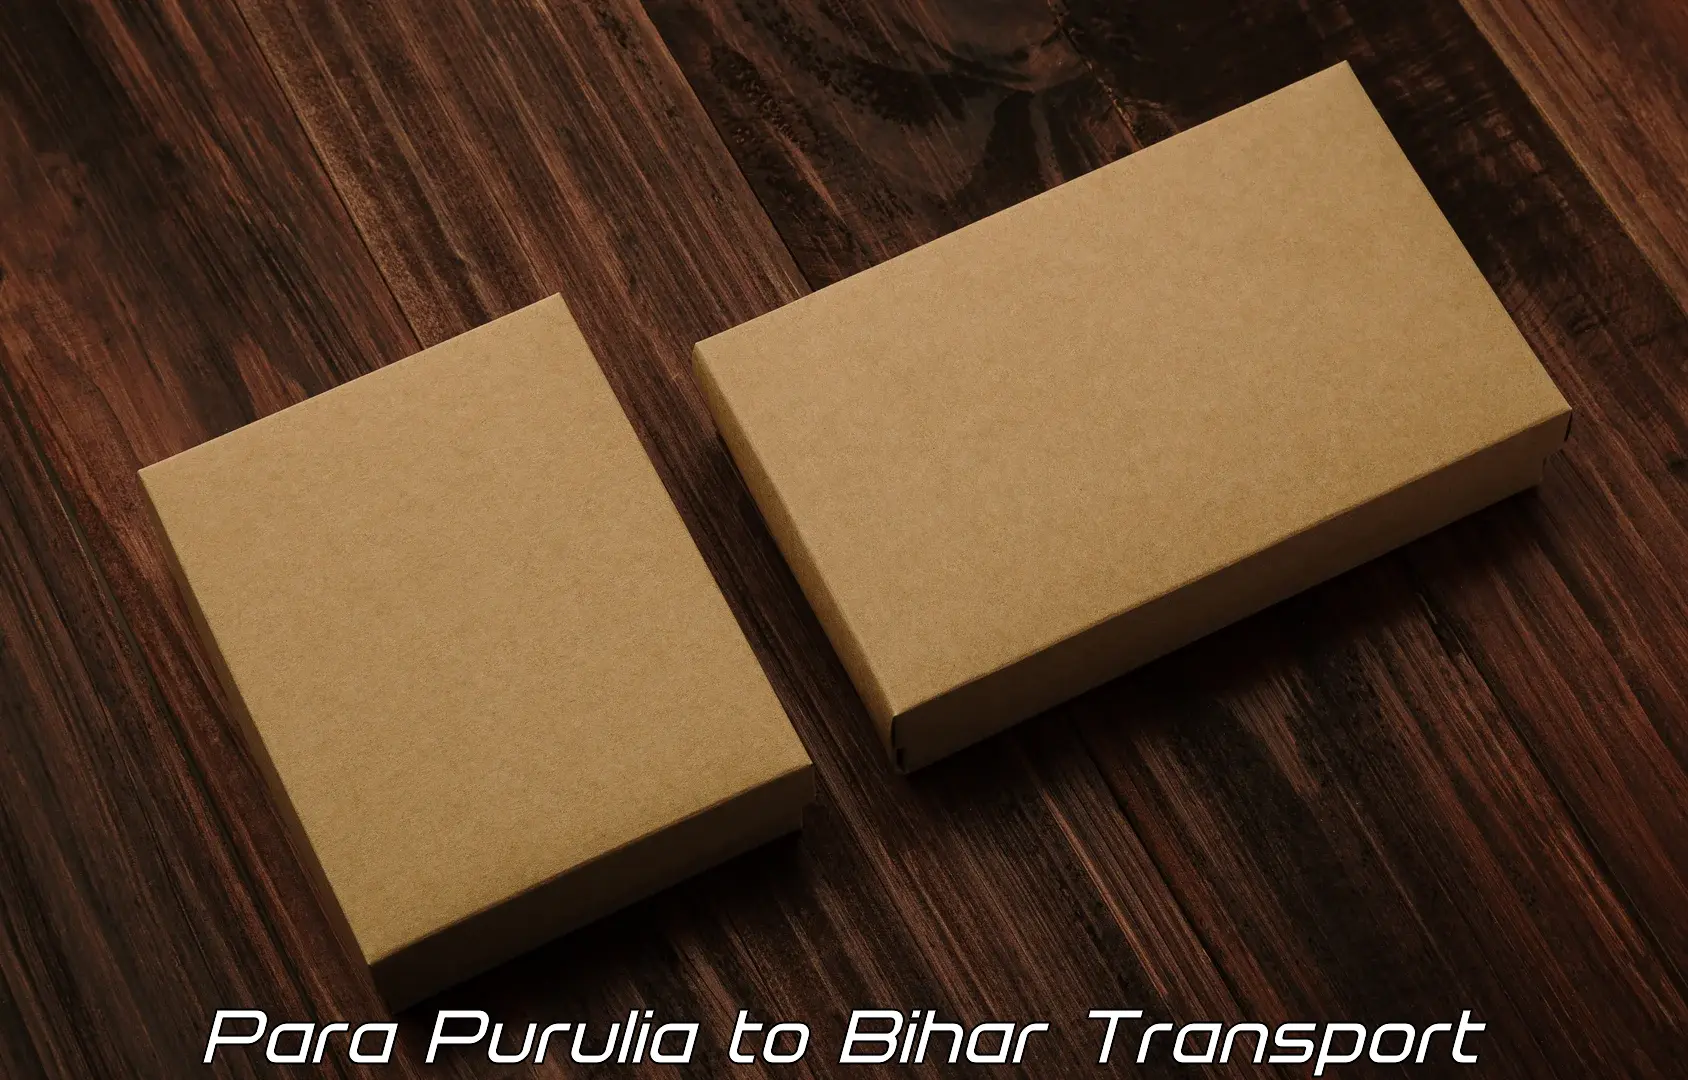 Furniture transport service Para Purulia to Bharwara